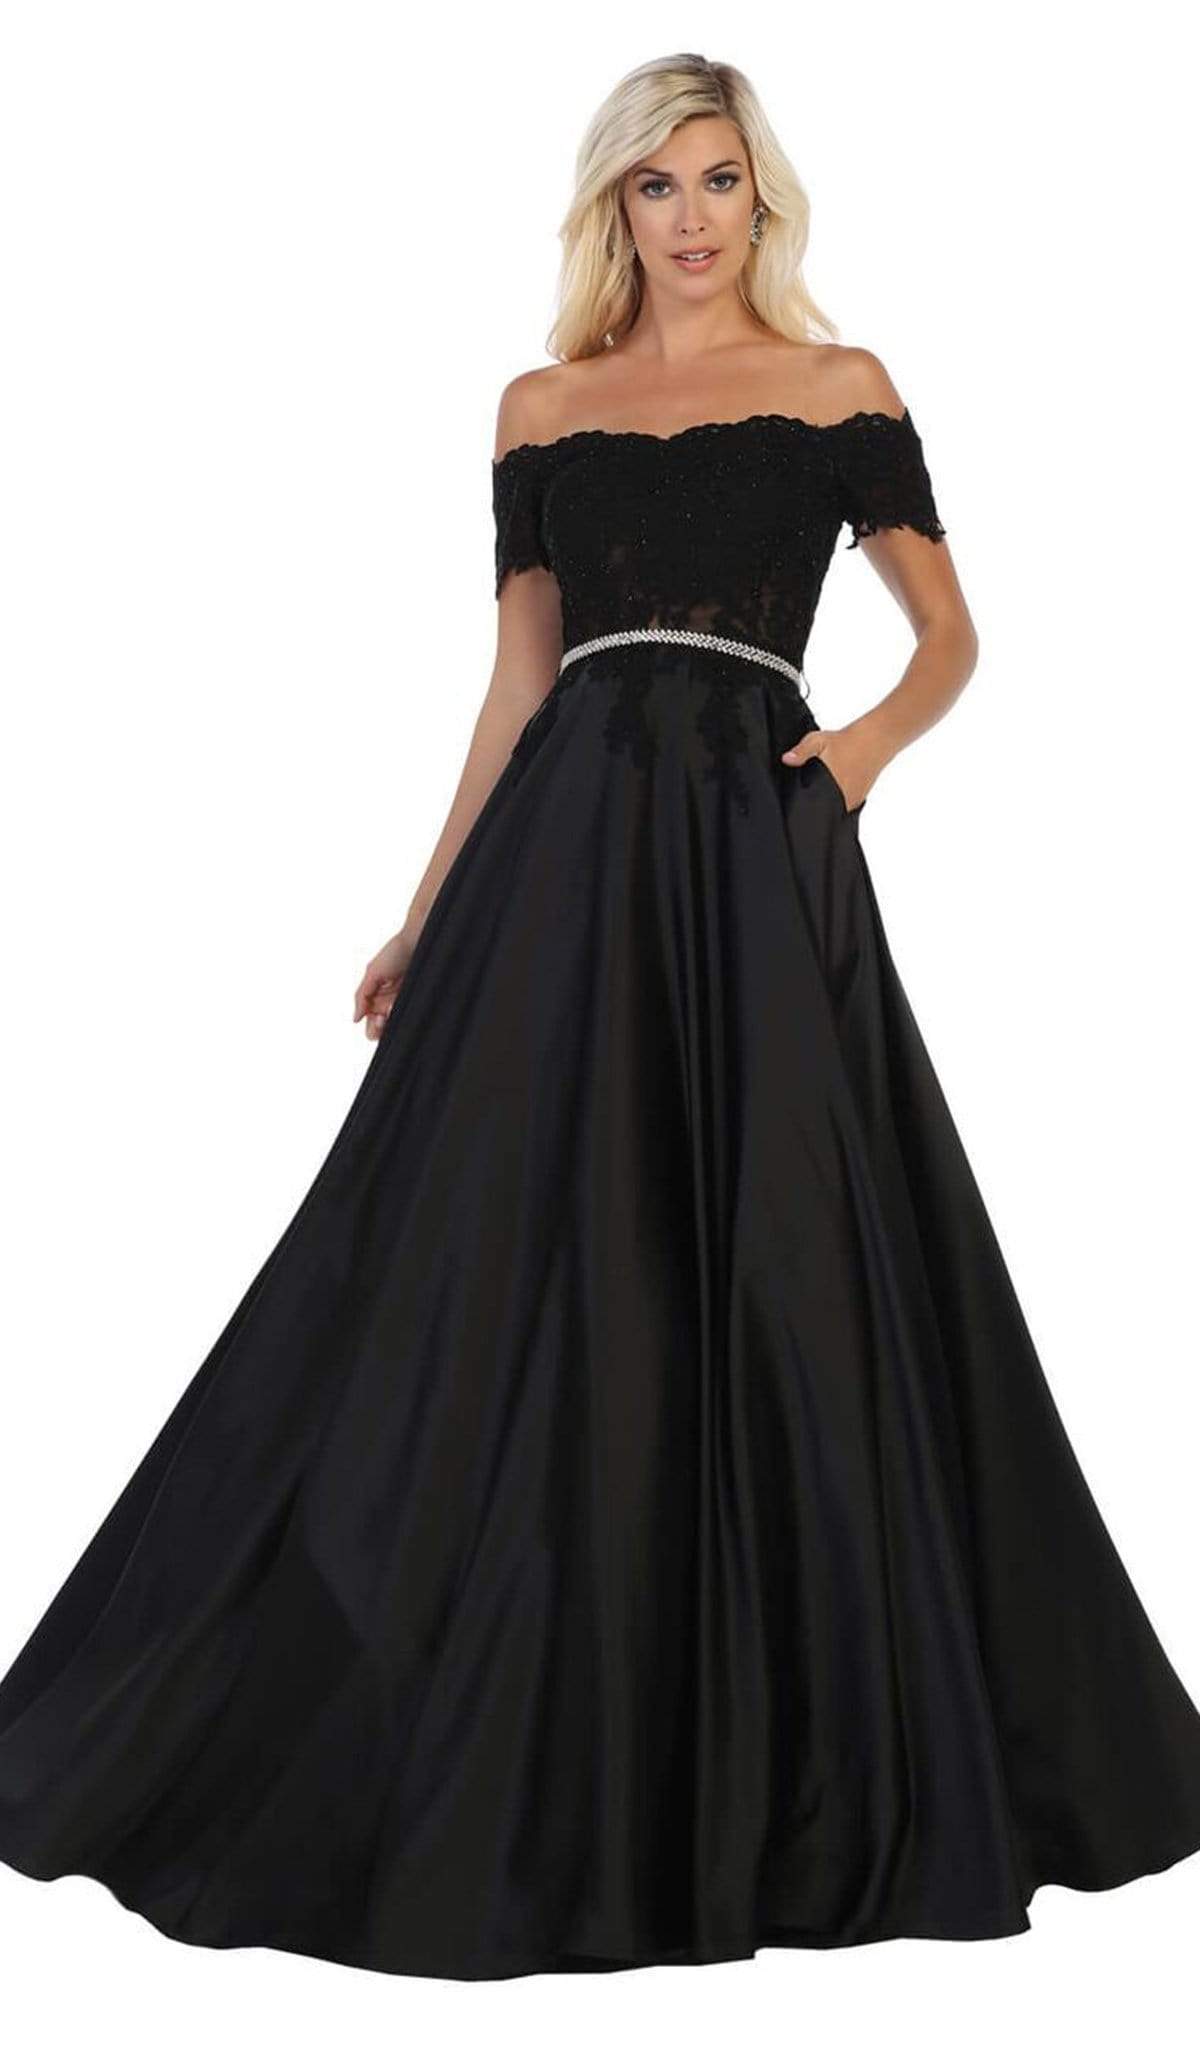 May Queen - MQ1639 Lace Off-Shoulder A-Line Dress Bridesmaid Dresses 4 / Black